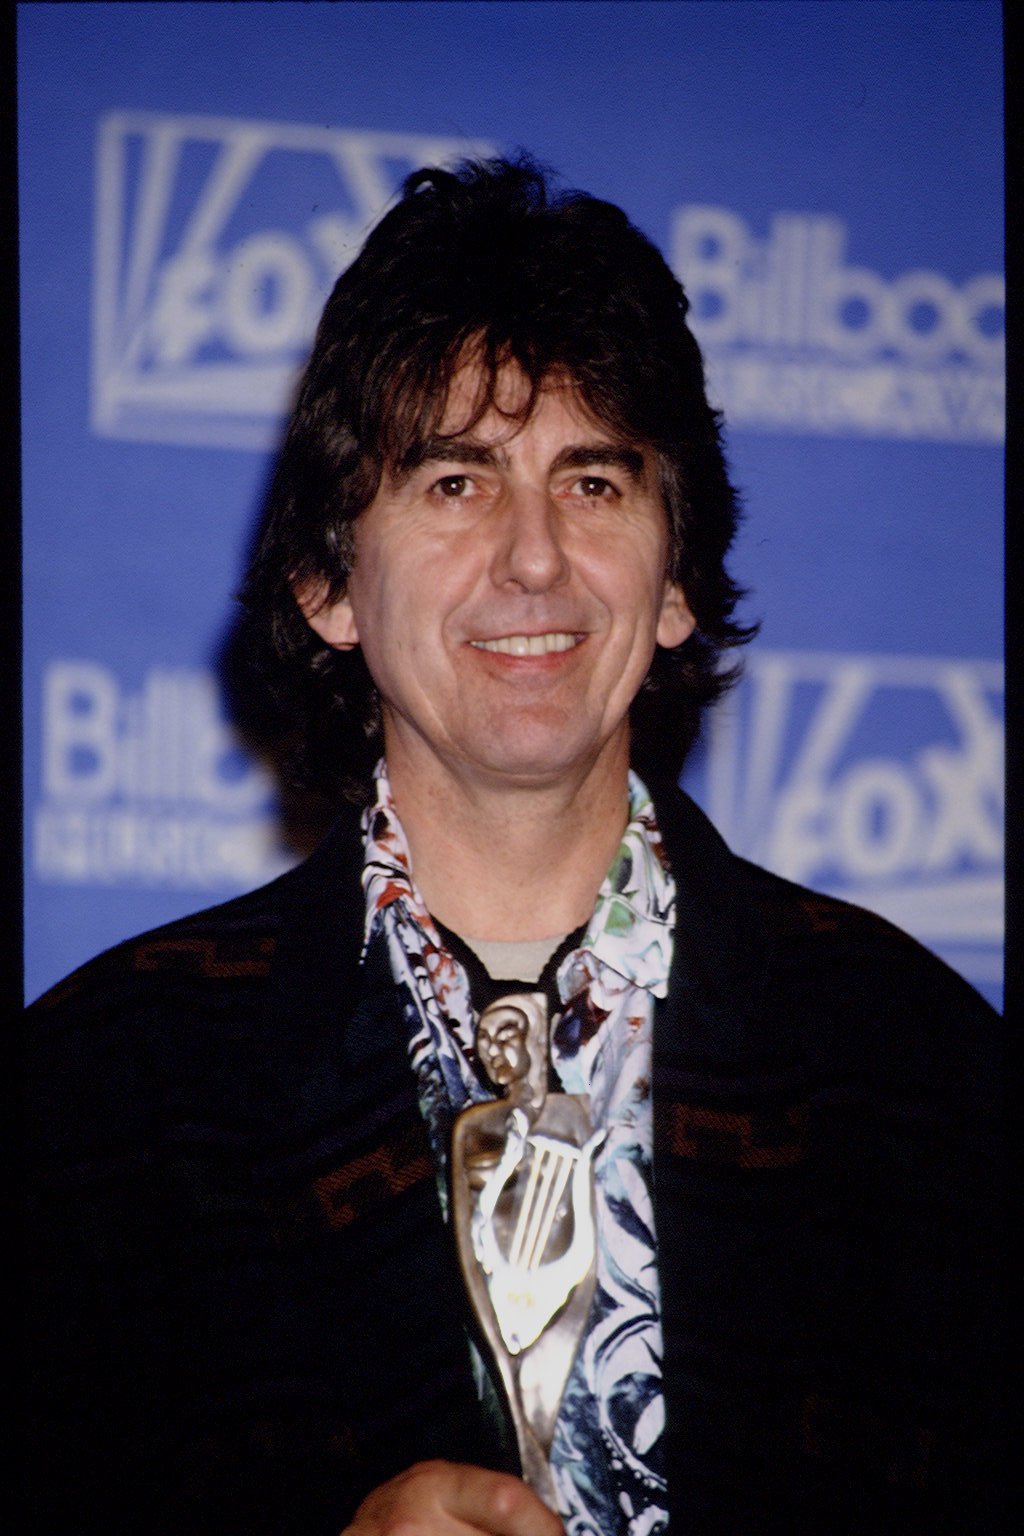 Kytarista Beatles George Harrison byl v roce 1997 operován kvůli rakovině hrtanu vyvolané zřejmě náruživým kuřáctvím. Později u něj lékaři diagnostikovali také rakovinu plic a mozkový nádor. Harrison zemřel v osmapadesáti letech